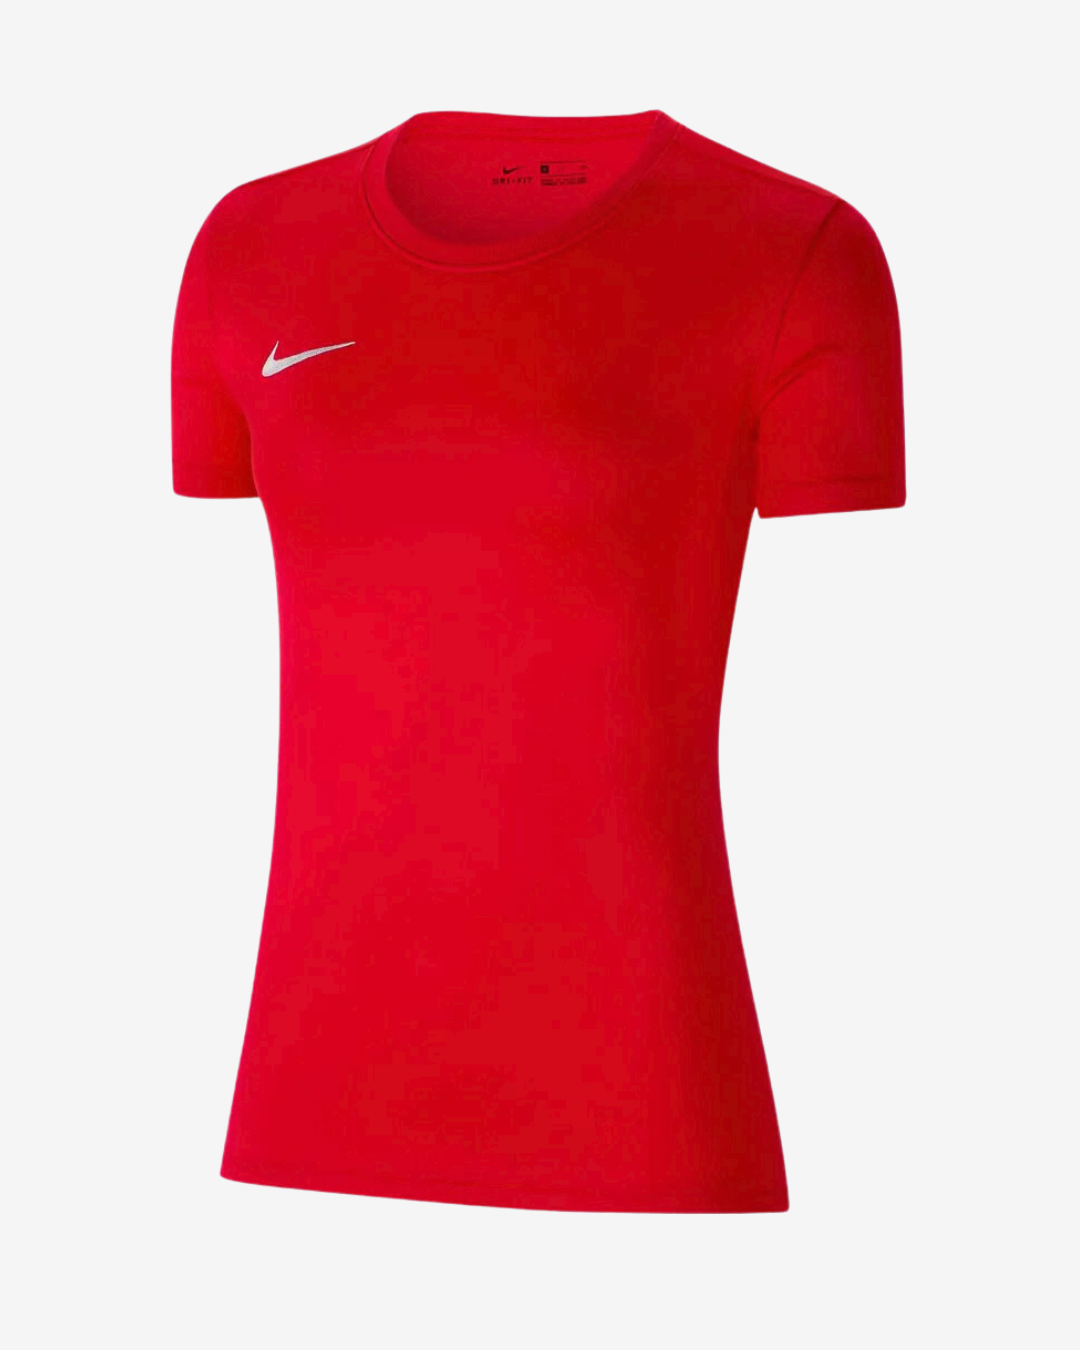 Billede af Nike Dri-fit park 7 dame t-shirt - Rød - Str. XS - Modish.dk